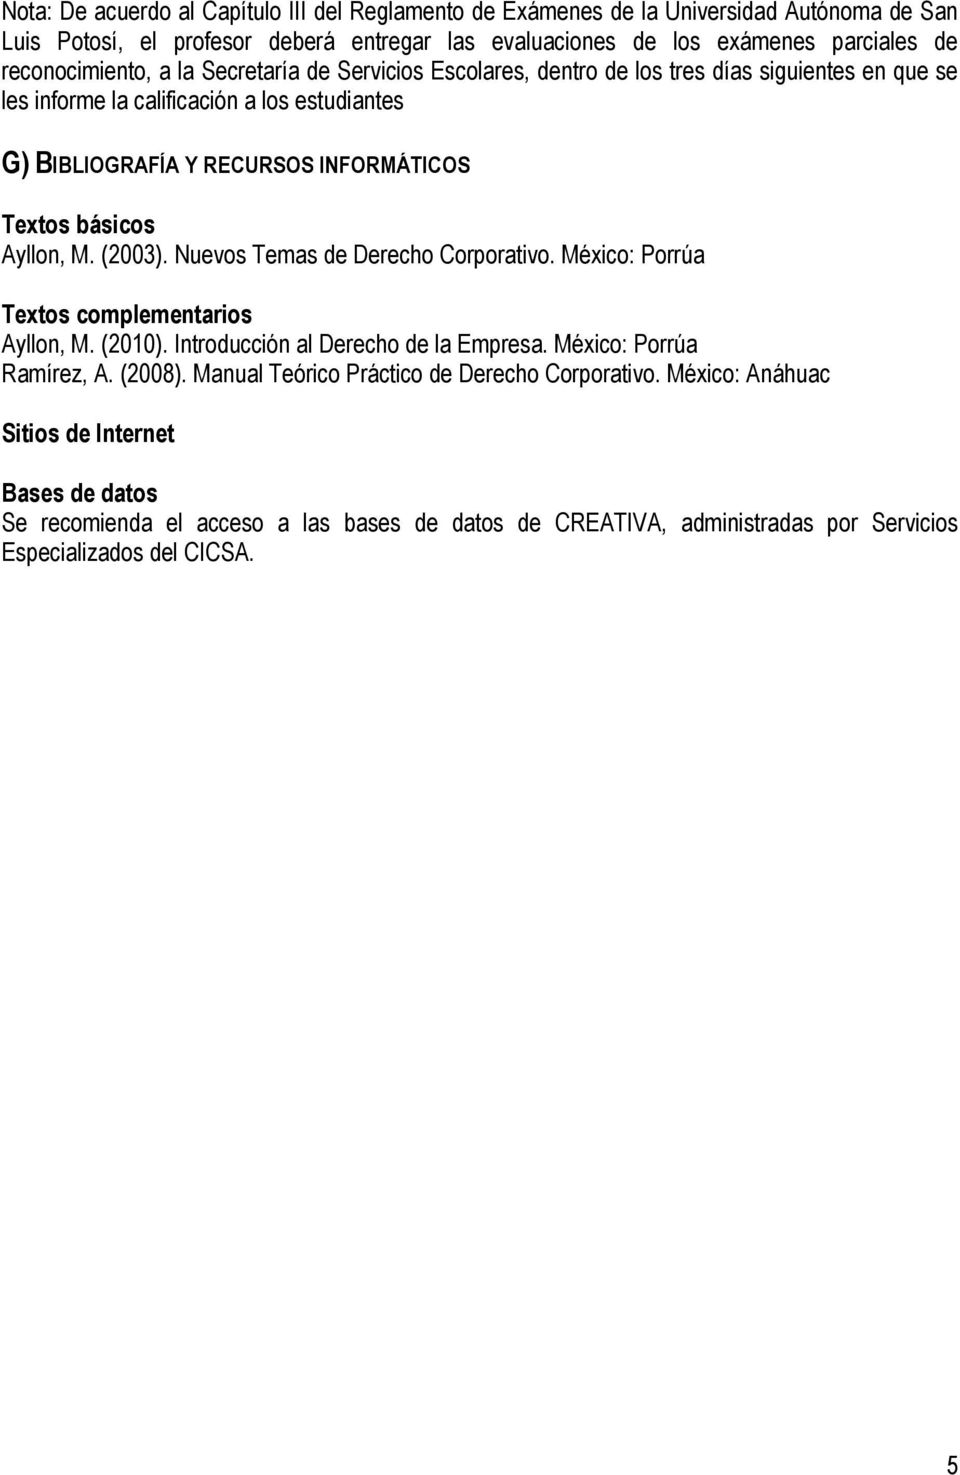 básicos Ayllon, M. (2003). Nuevos Temas de Derecho Corporativo. México: Porrúa Textos complementarios Ayllon, M. (2010). Introducción al Derecho de la Empresa. México: Porrúa Ramírez, A. (2008).